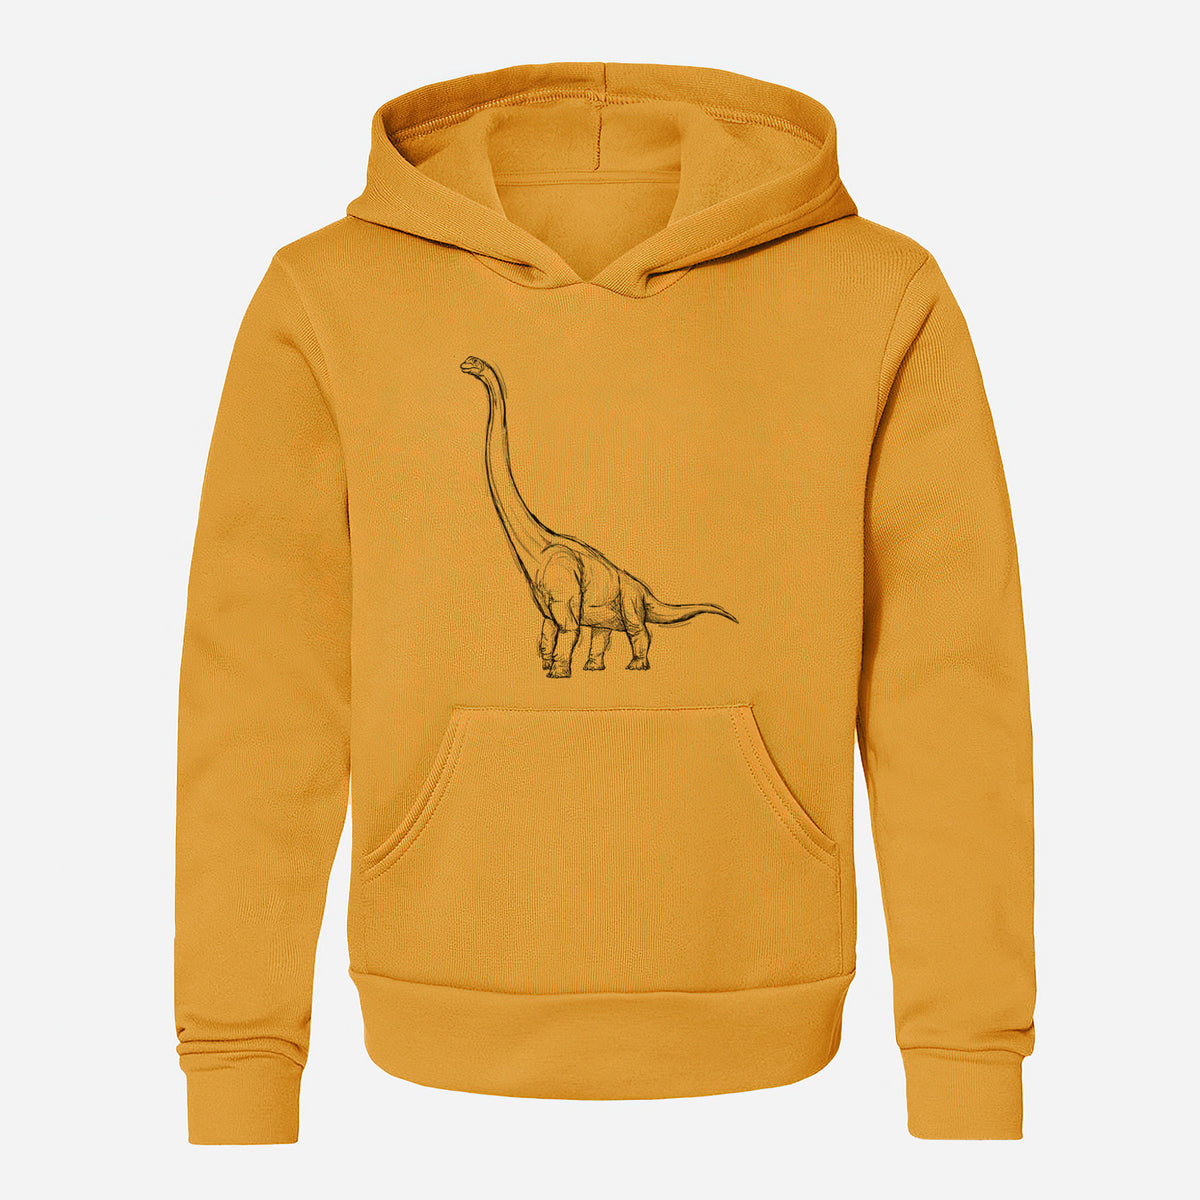 Apatosaurus Excelsus - Youth Hoodie Sweatshirt